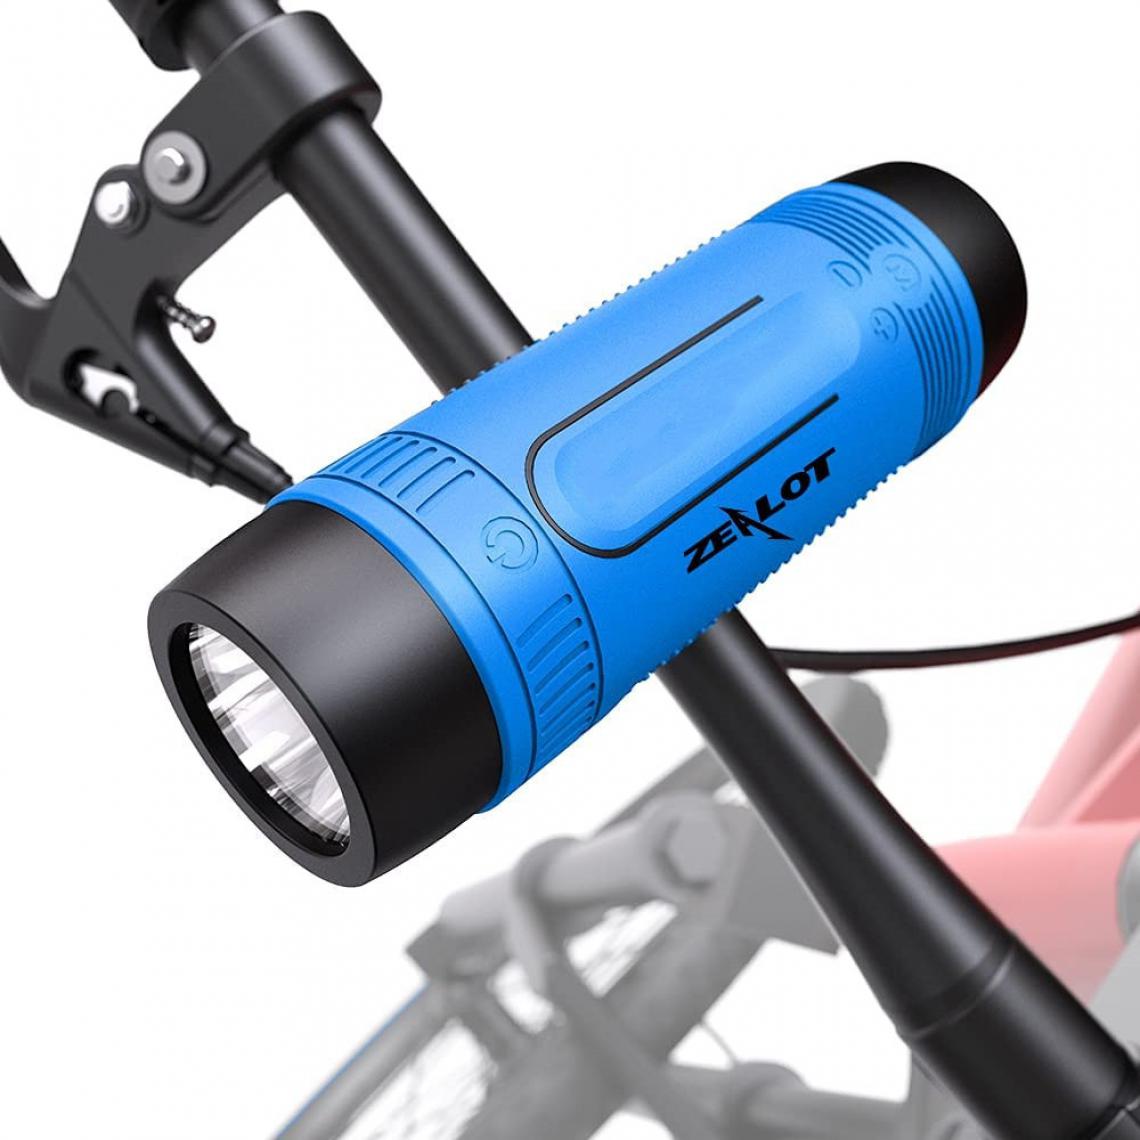 Chrono - Enceinte Bluetooth avec Support vélo, Haut-Parleur Bluetooth Speaker wireless/4000mAh Powerbank/Lumière LED/Autonomie 27hrs Support AUX&SD, Très utile pour Lors balades à vélo en Solitaire,Bleu - Enceintes Hifi